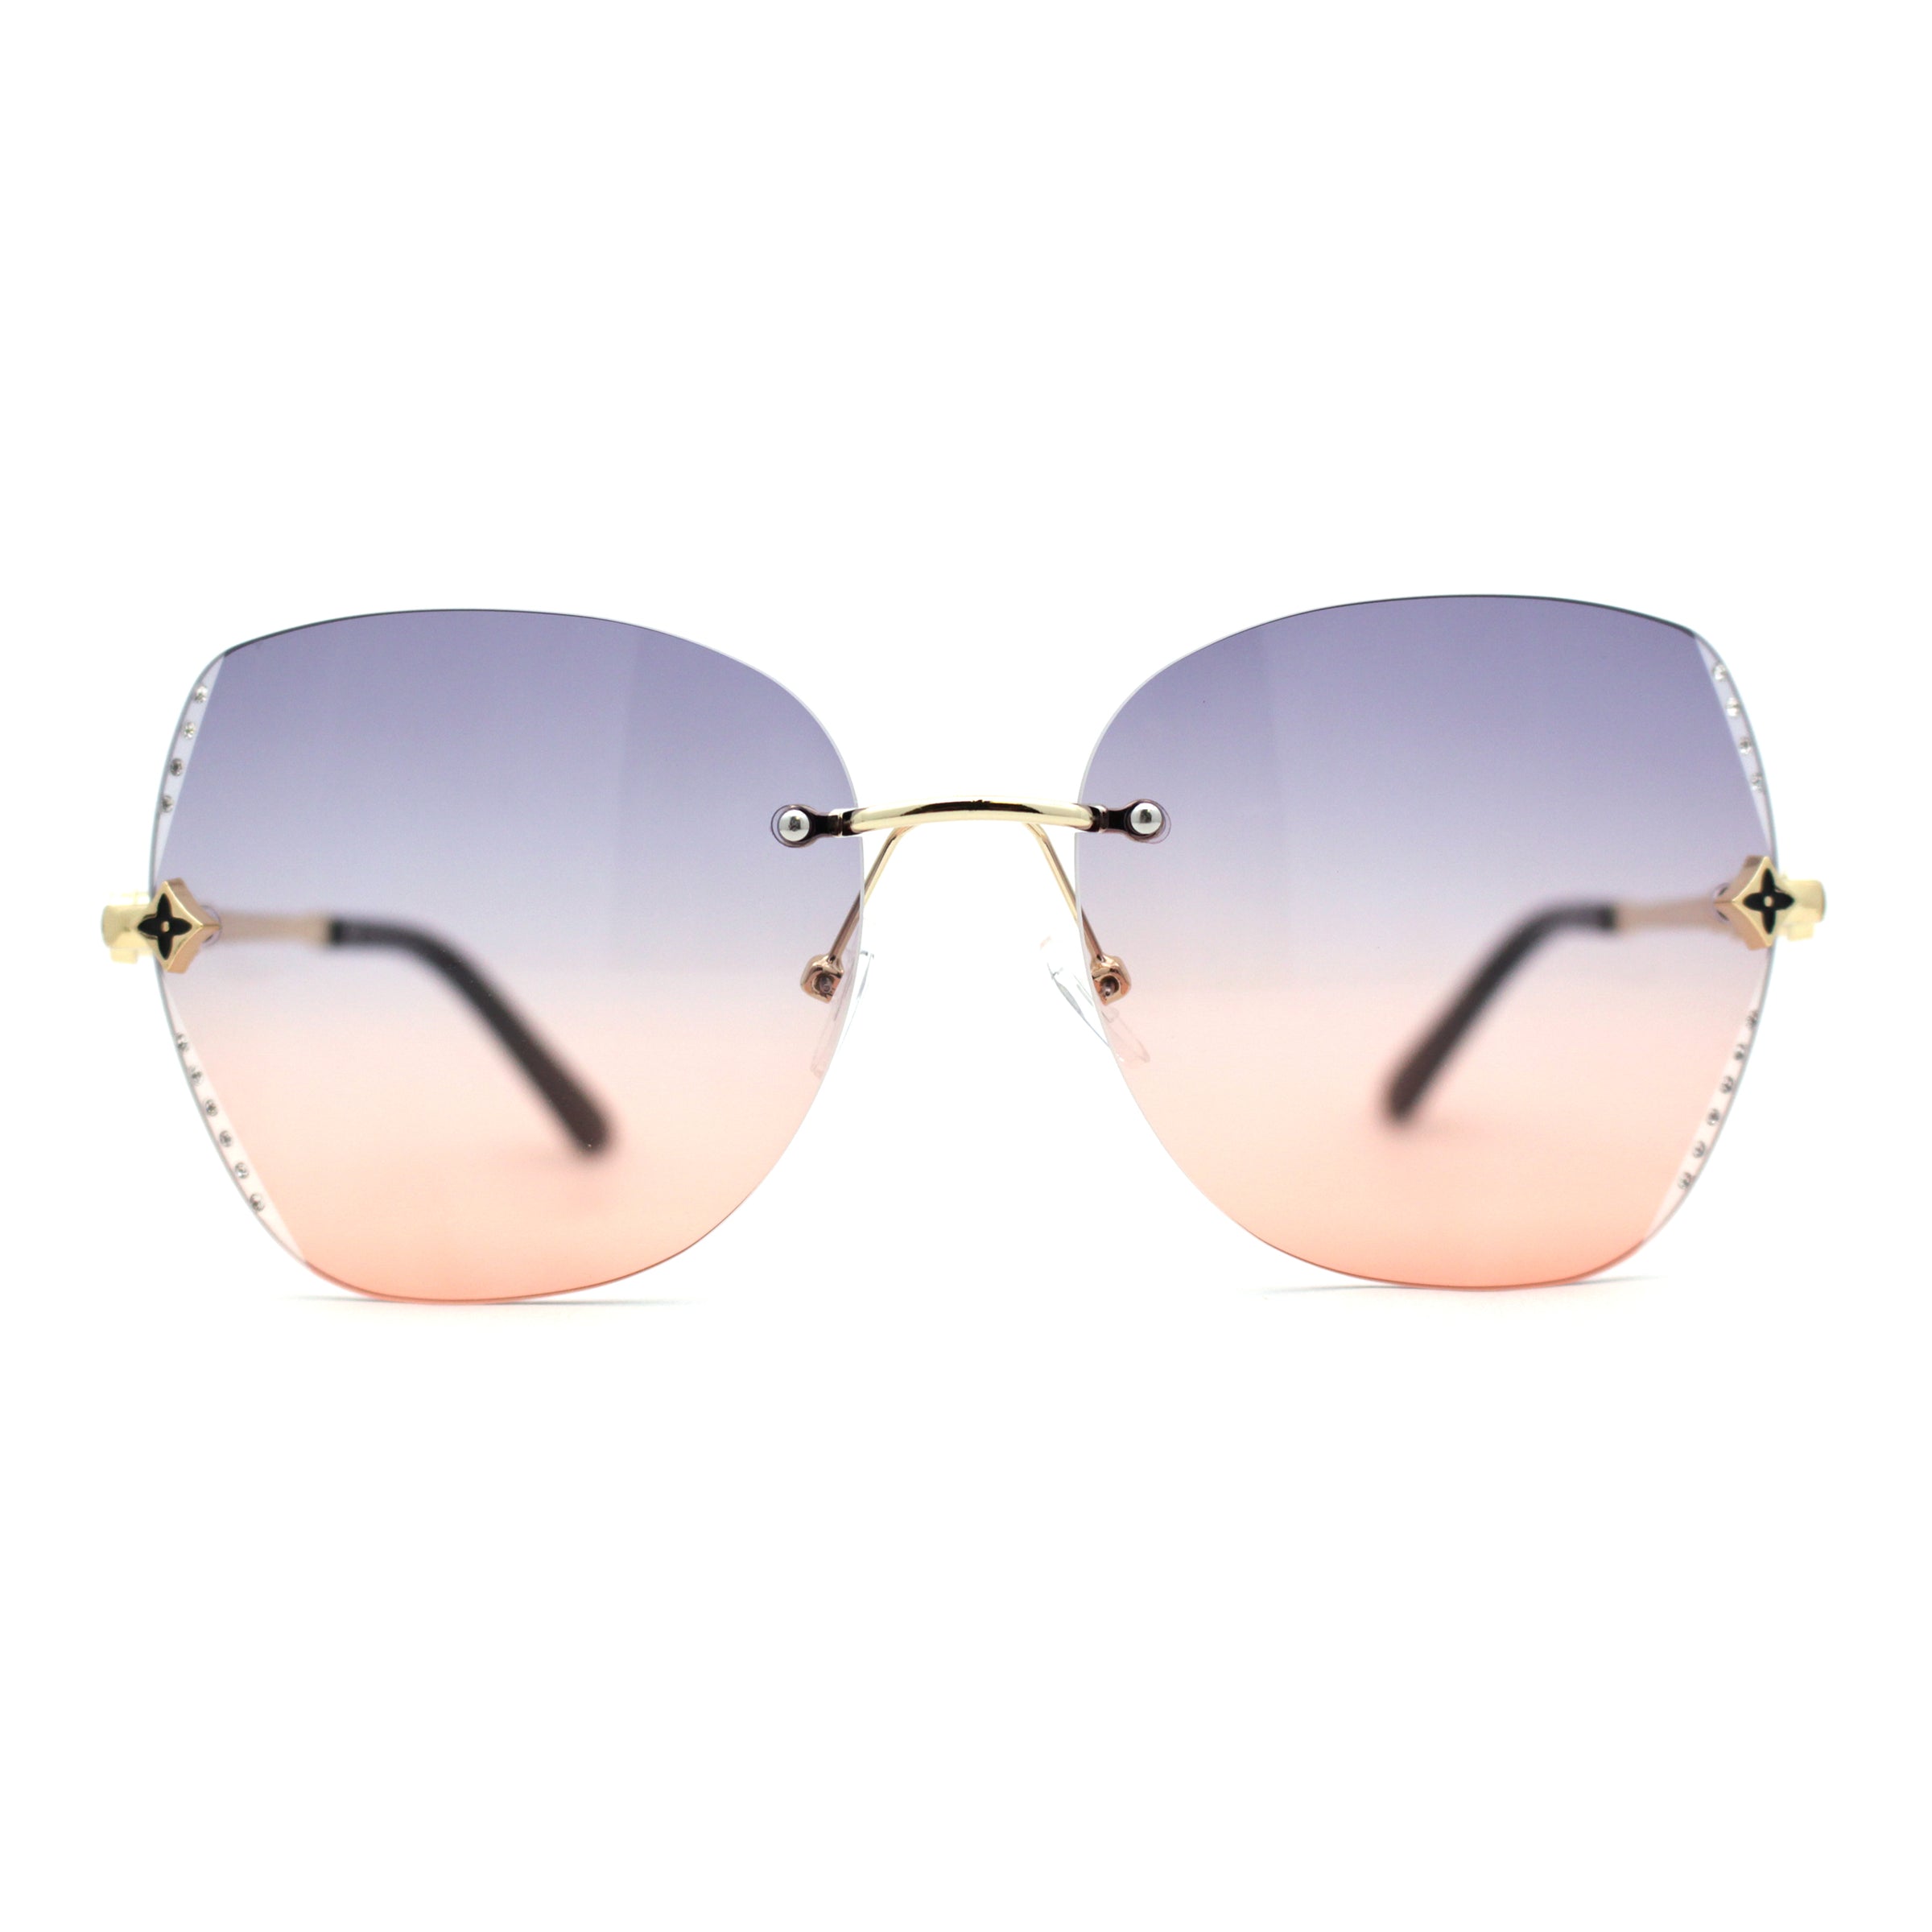 Womens Bevel Edge Rimless Oversize Cat Eye Rhinestone Sunglasses